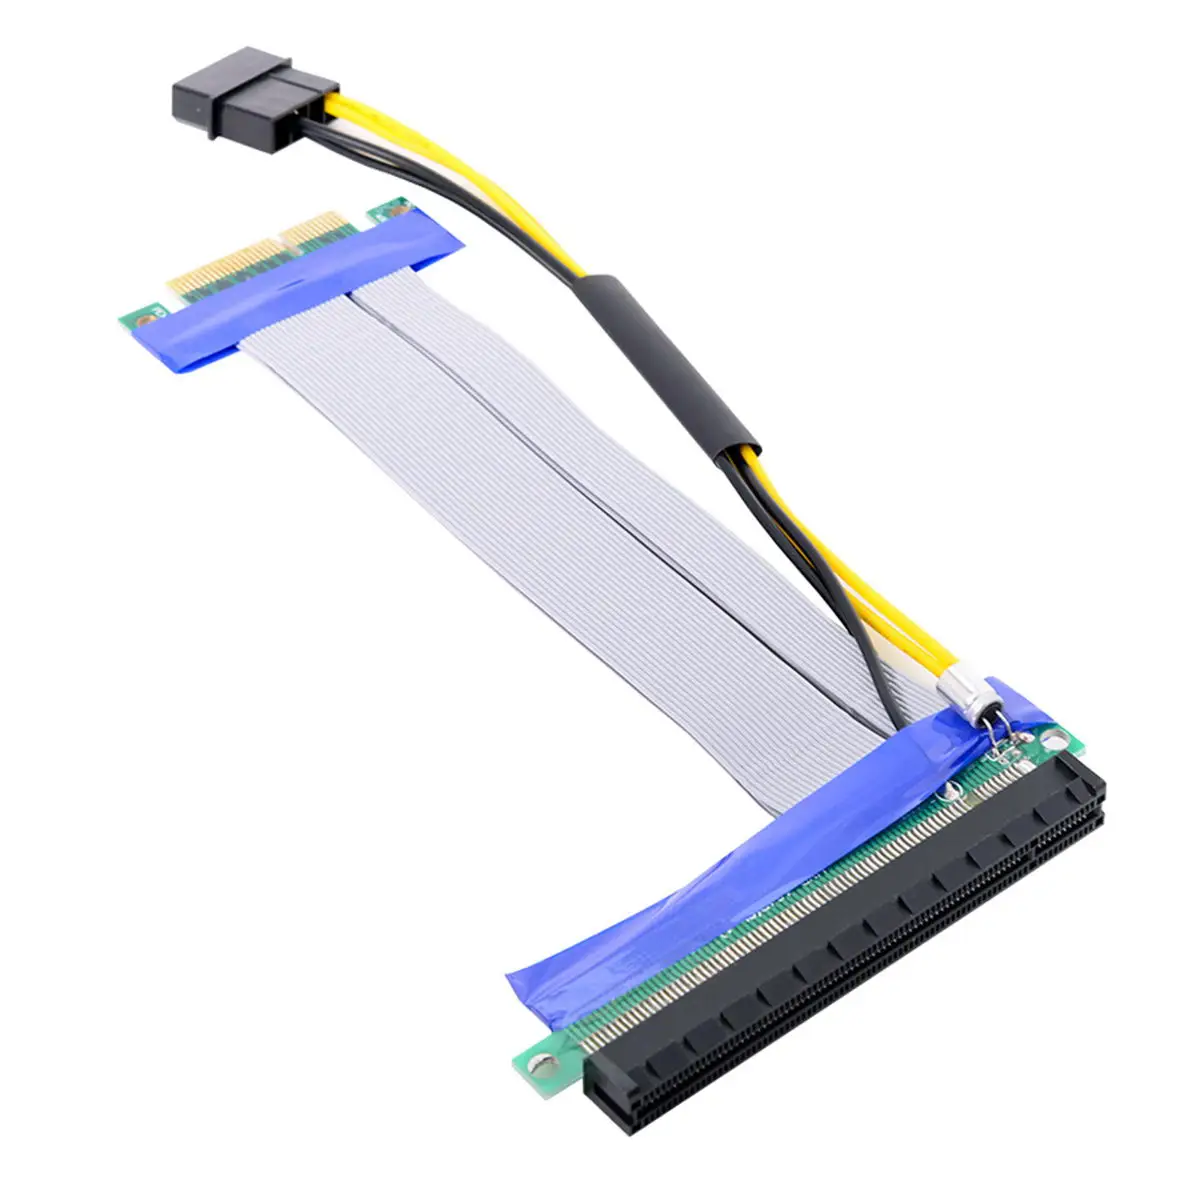 

CYSM Chenyang от 4x до 16x PCI-E Express, гибкий кабель, переходник-карта, адаптер, расширитель, преобразователь с 4-контактным питанием, 15 см